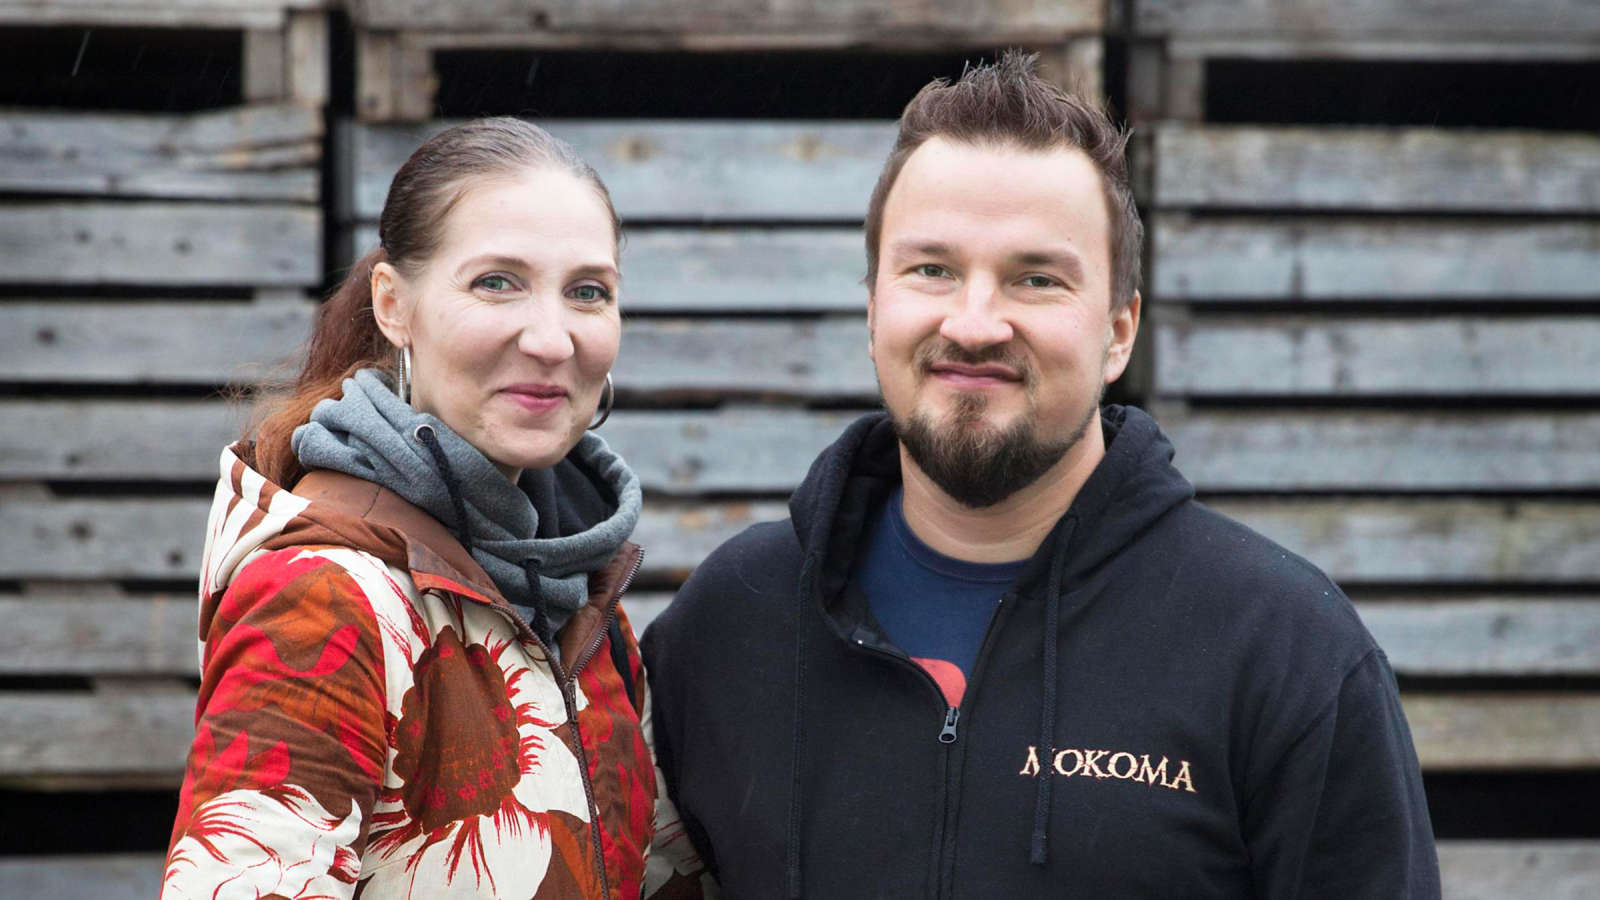 Hanne ja Jukka Kinnunen viljelevät inkivääriä. Heistä kaupalla on keskeinen rooli ruokavalintojen ohjaamisessa.